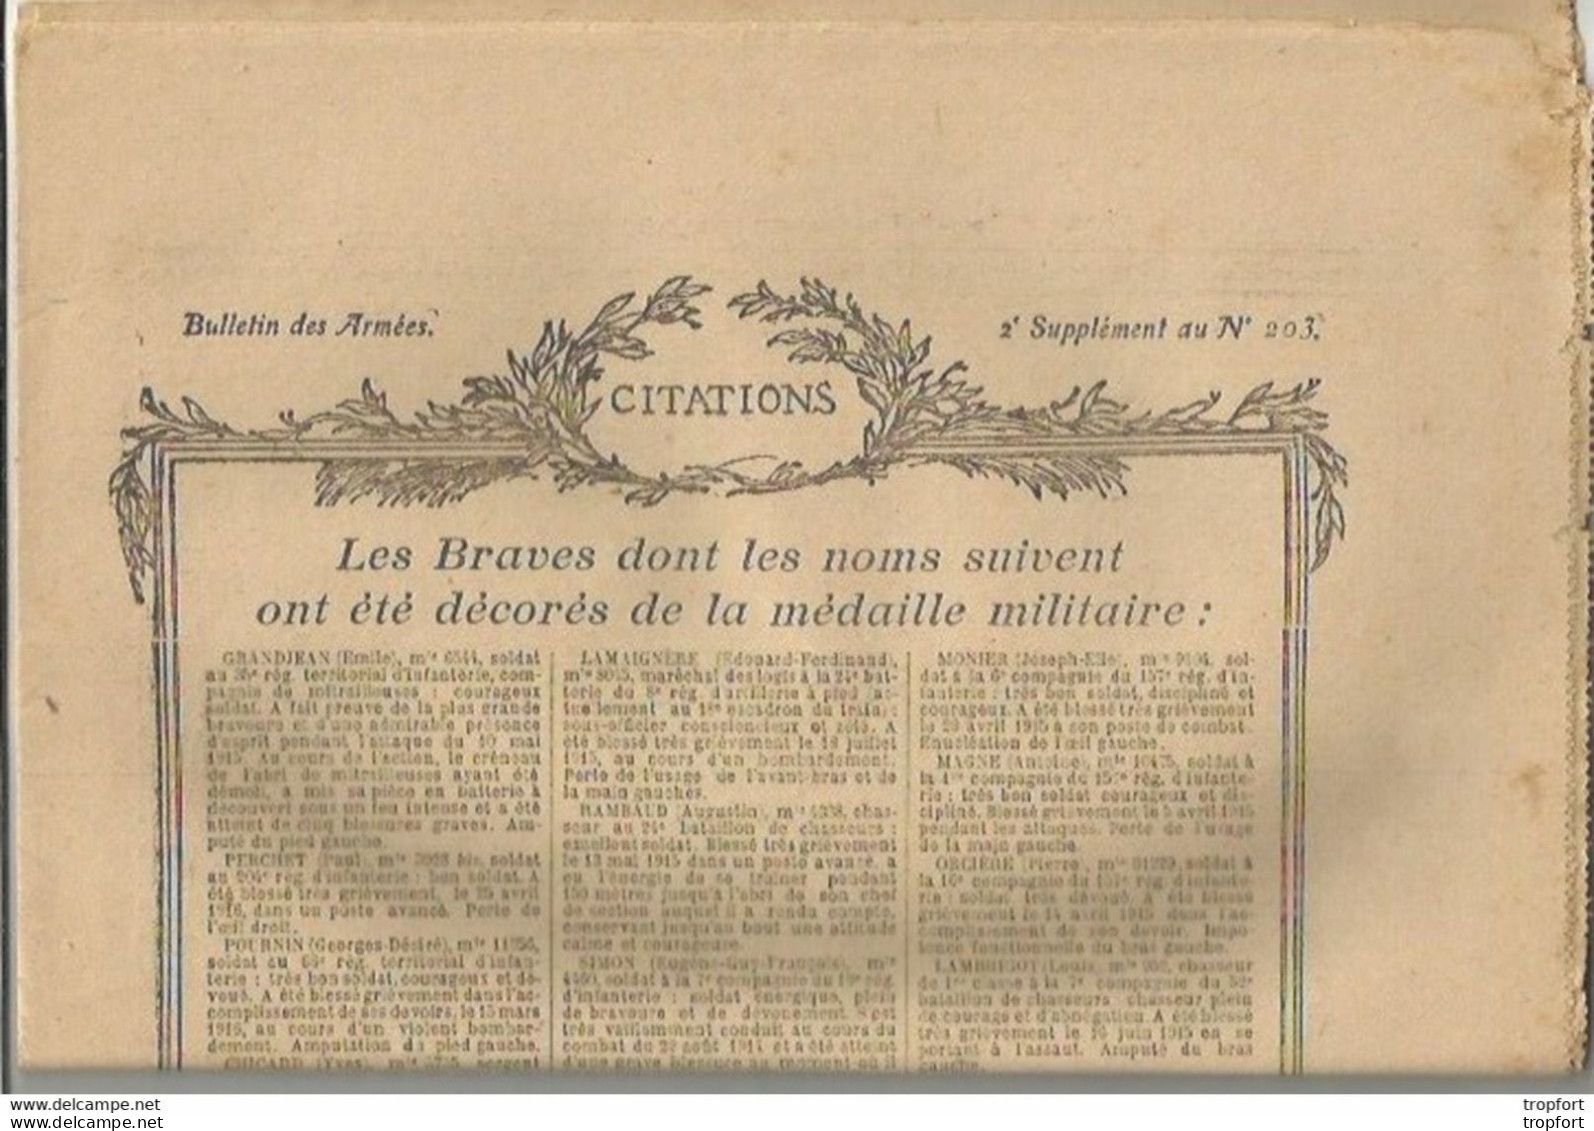 TH / Rare Journal BULLETIN DES ARMEES CITATIONS N°203 WW1 16 Pages MILITAIRES Citation 1914 1918 Guerre Bléssés - Allgemeine Literatur